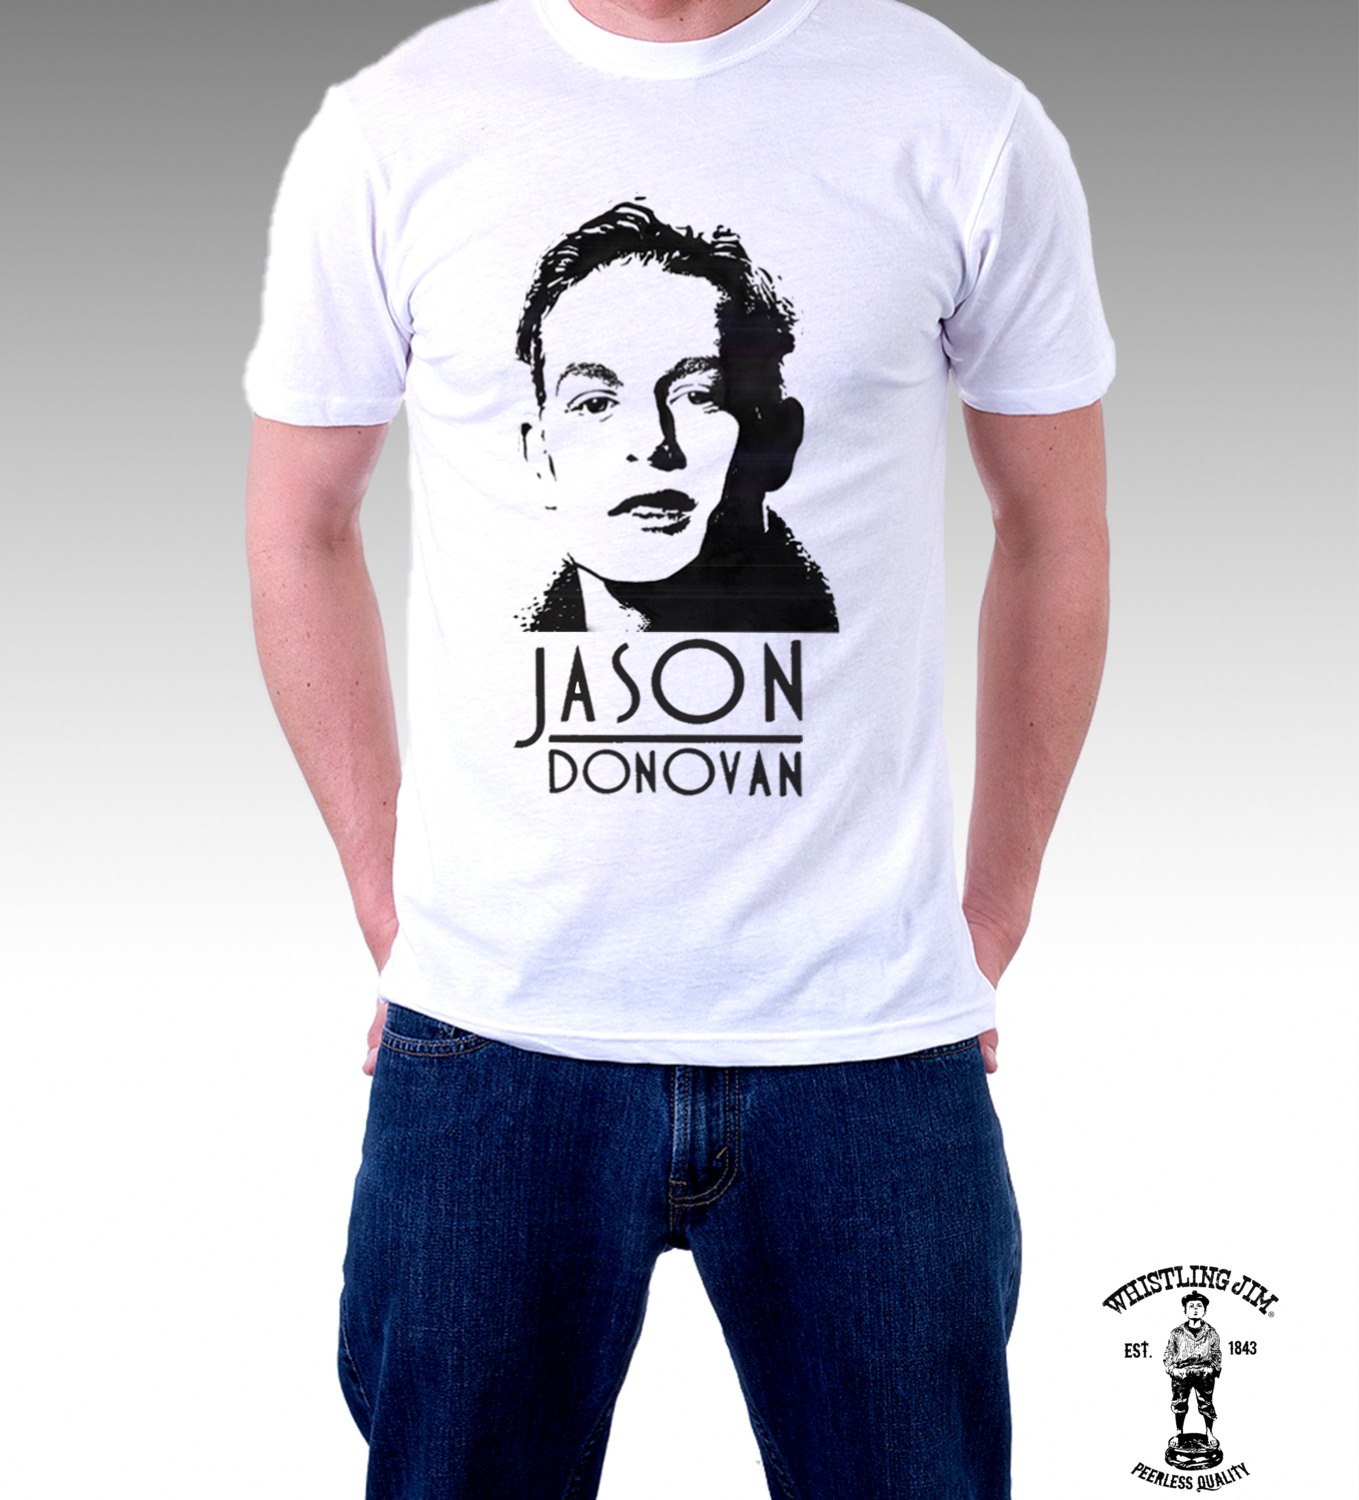 Jason Donovan - 1980s T-Shirt